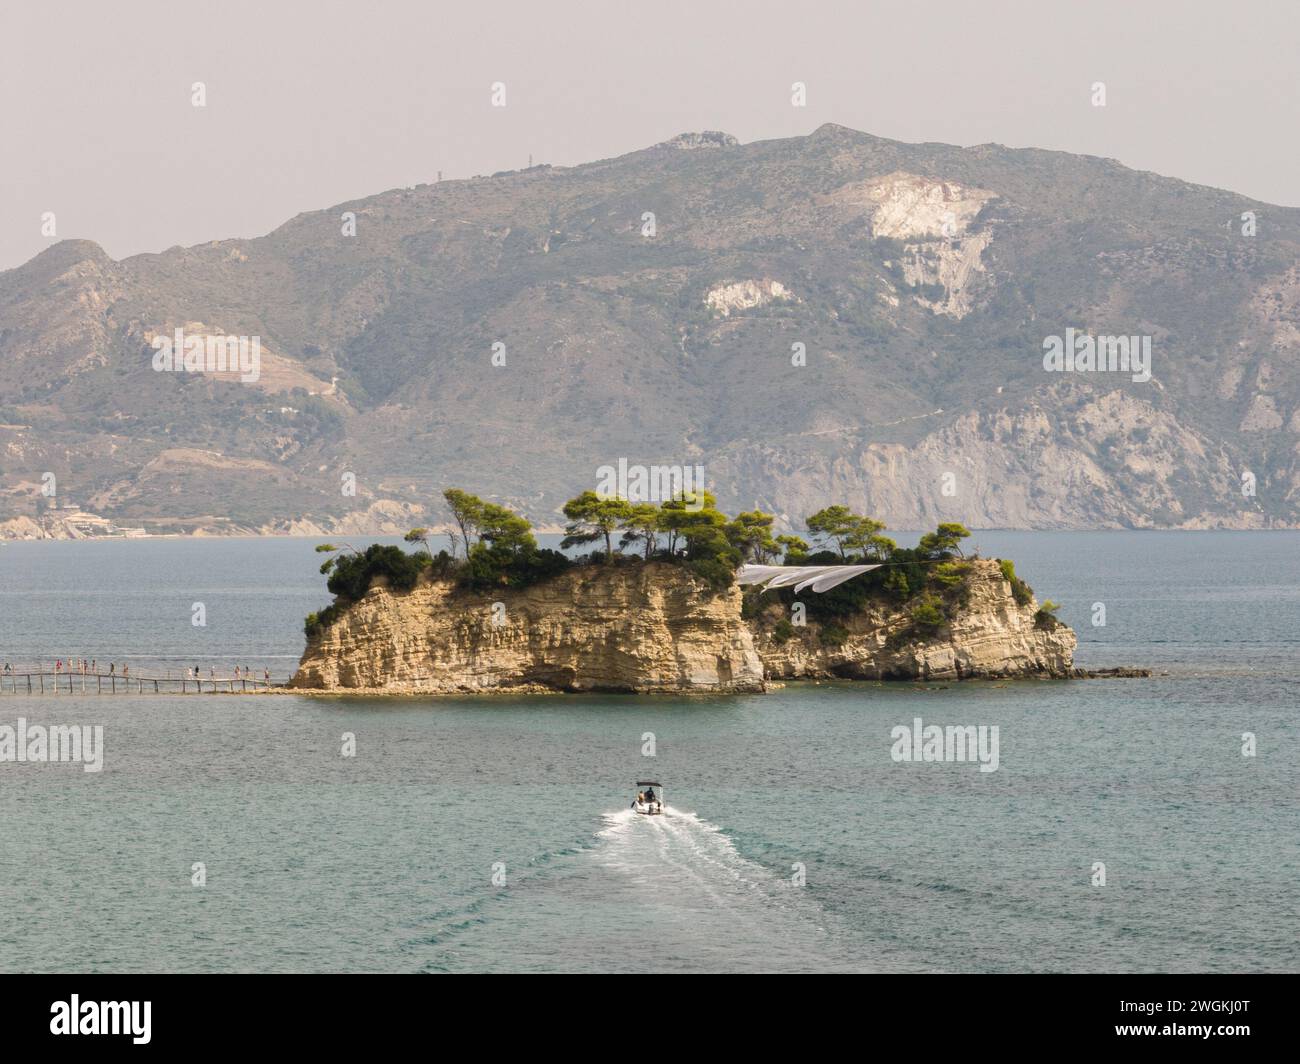 Cameo Wedding Island à Zakynthos, Grèce. Île grecque avec pont en bois. Île de Cameo en Grèce. Banque D'Images